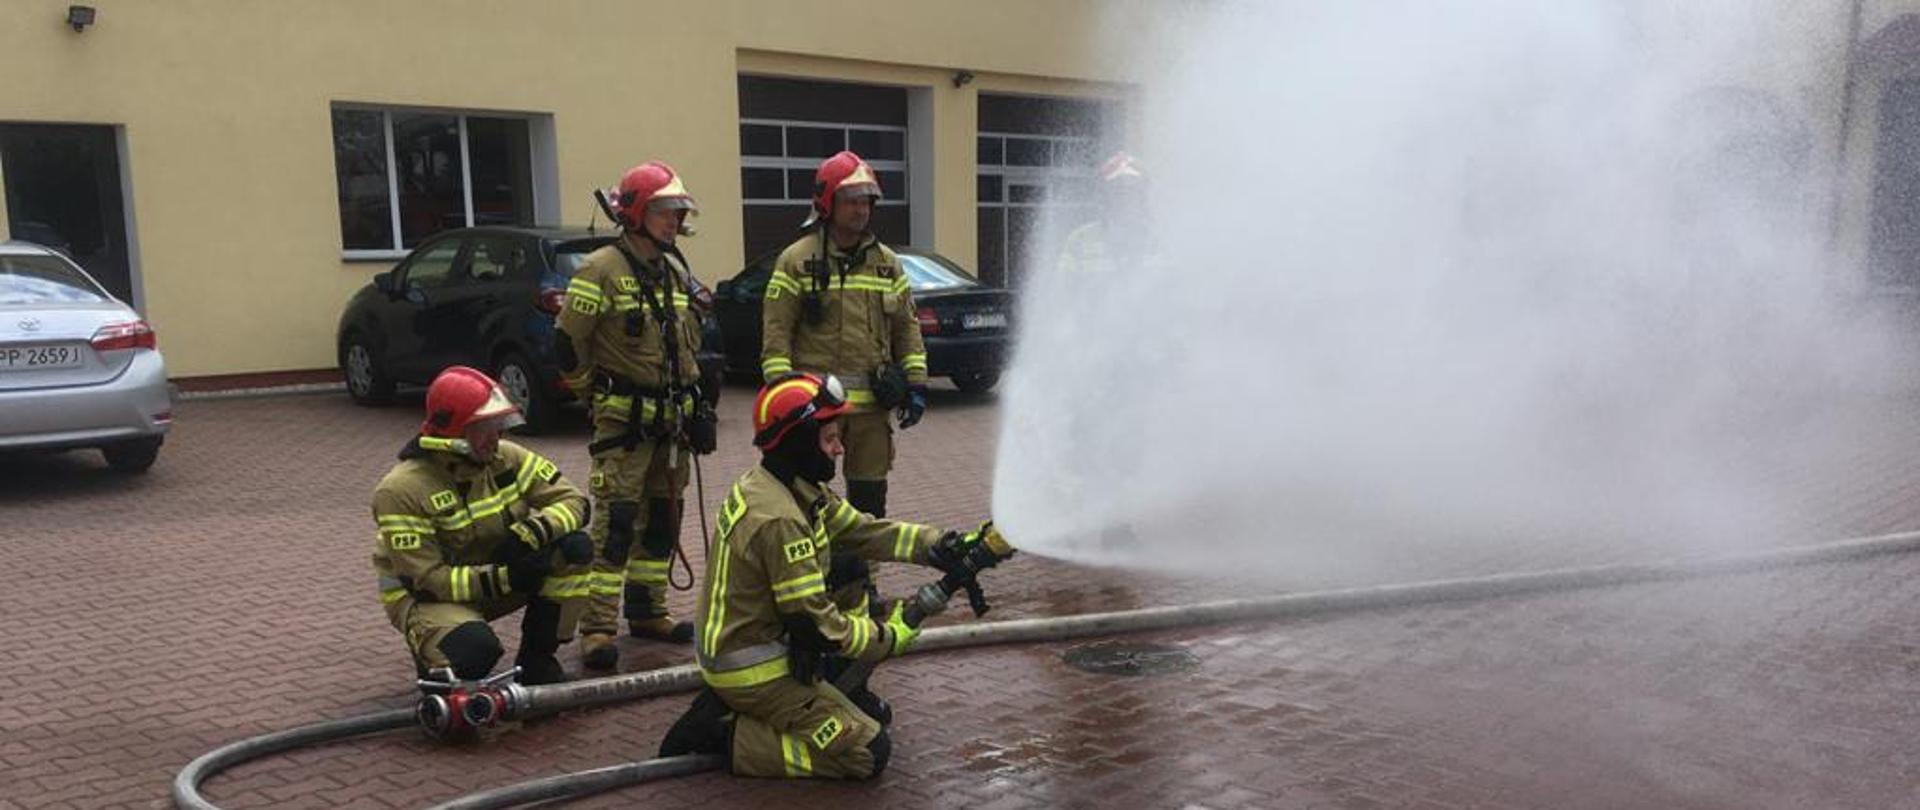 Na zdjęciu widnieją strażacy w trakcie prowadzenia zajęć szkoleniowych z zakresu gaszenia pożarów wewnętrznych. 